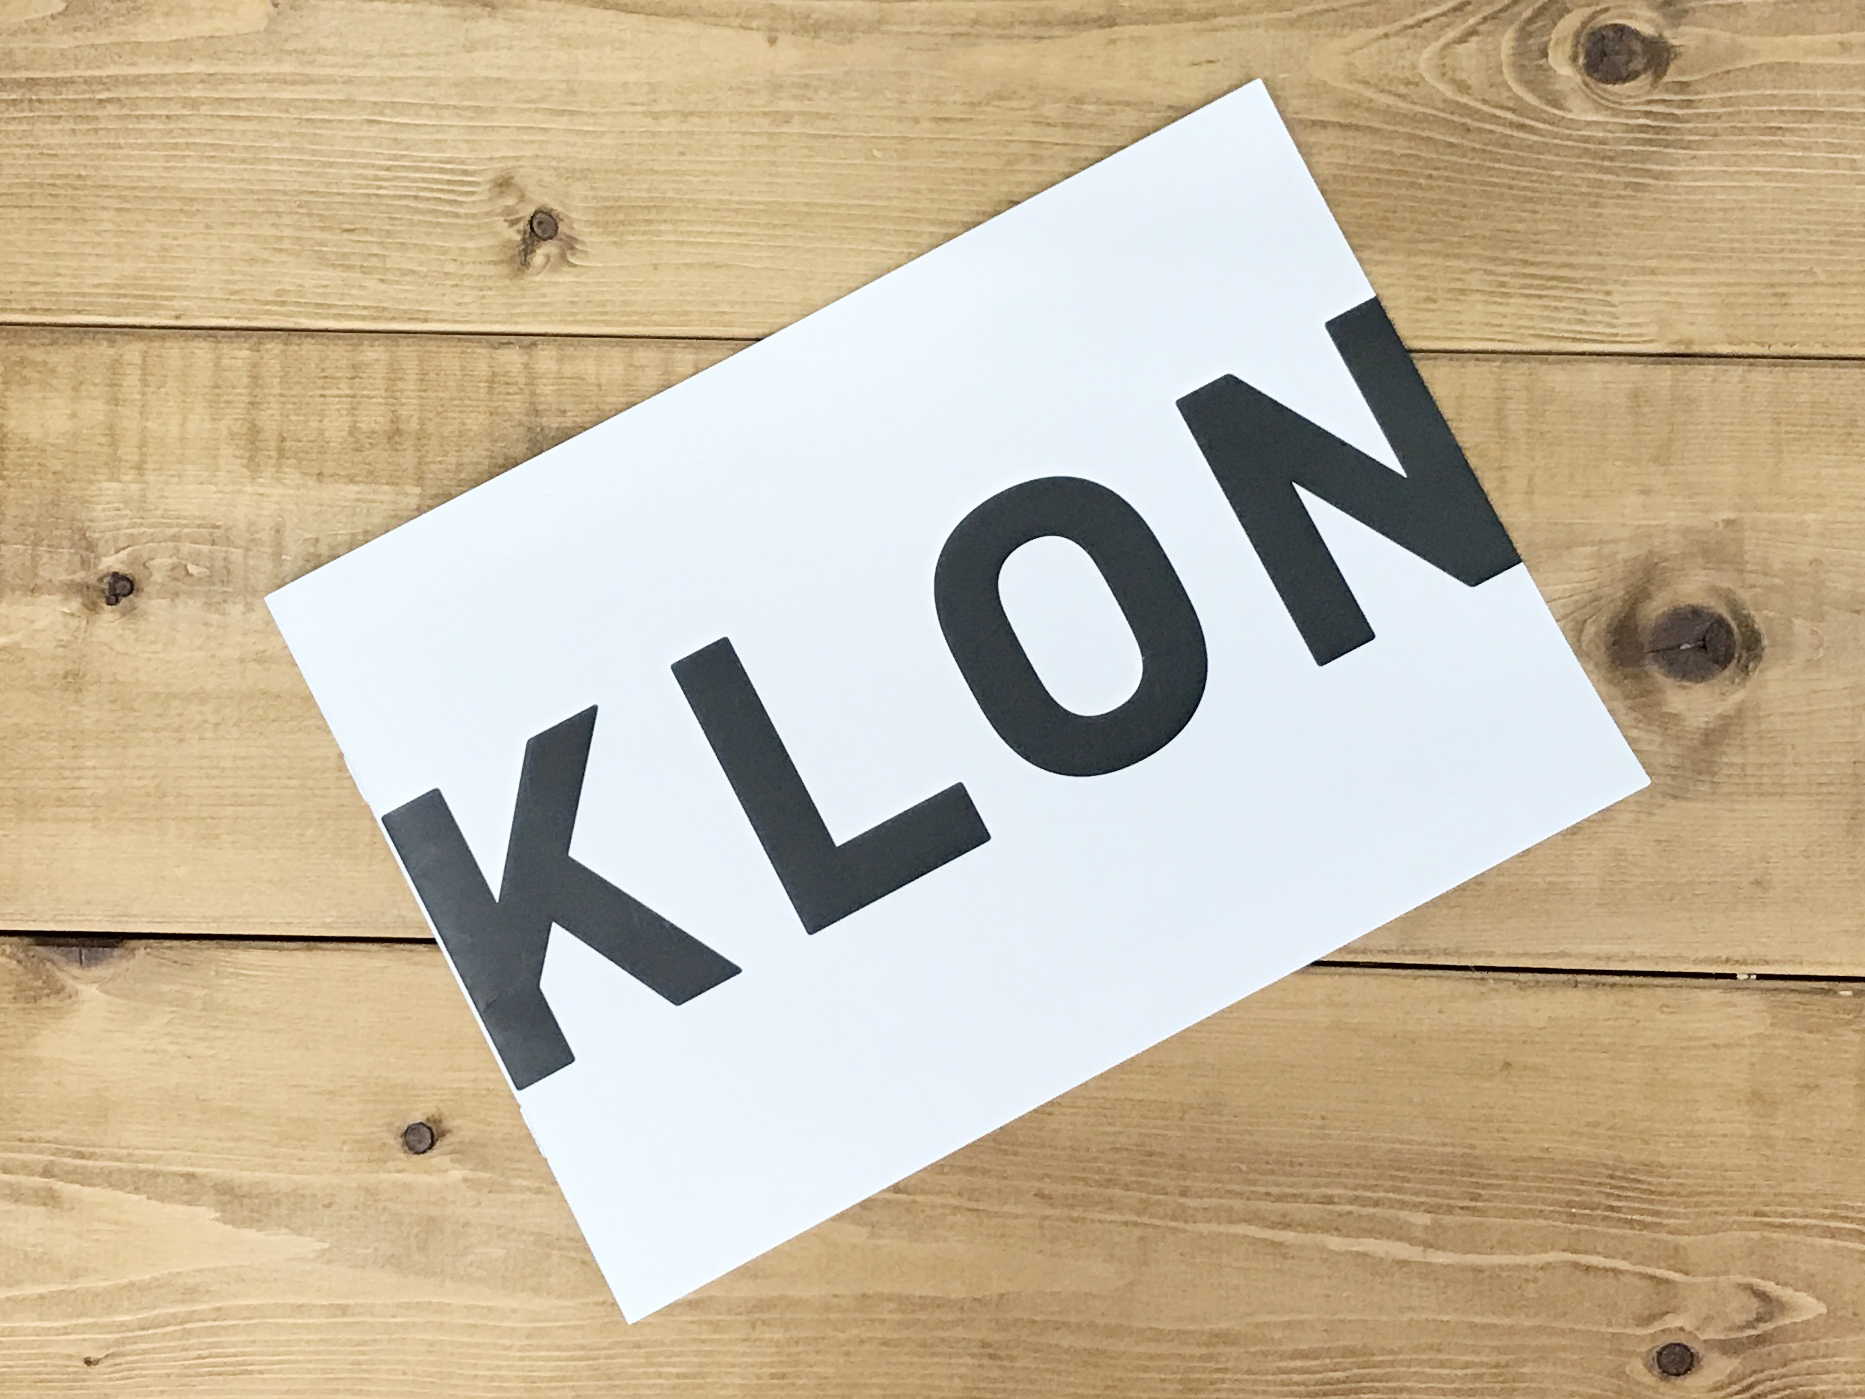 KLON パンフレット制作事例の画像| 大阪のデザイン会社 タイタン・アート ｜ パンフレット・カタログ制作・ホームページ制作